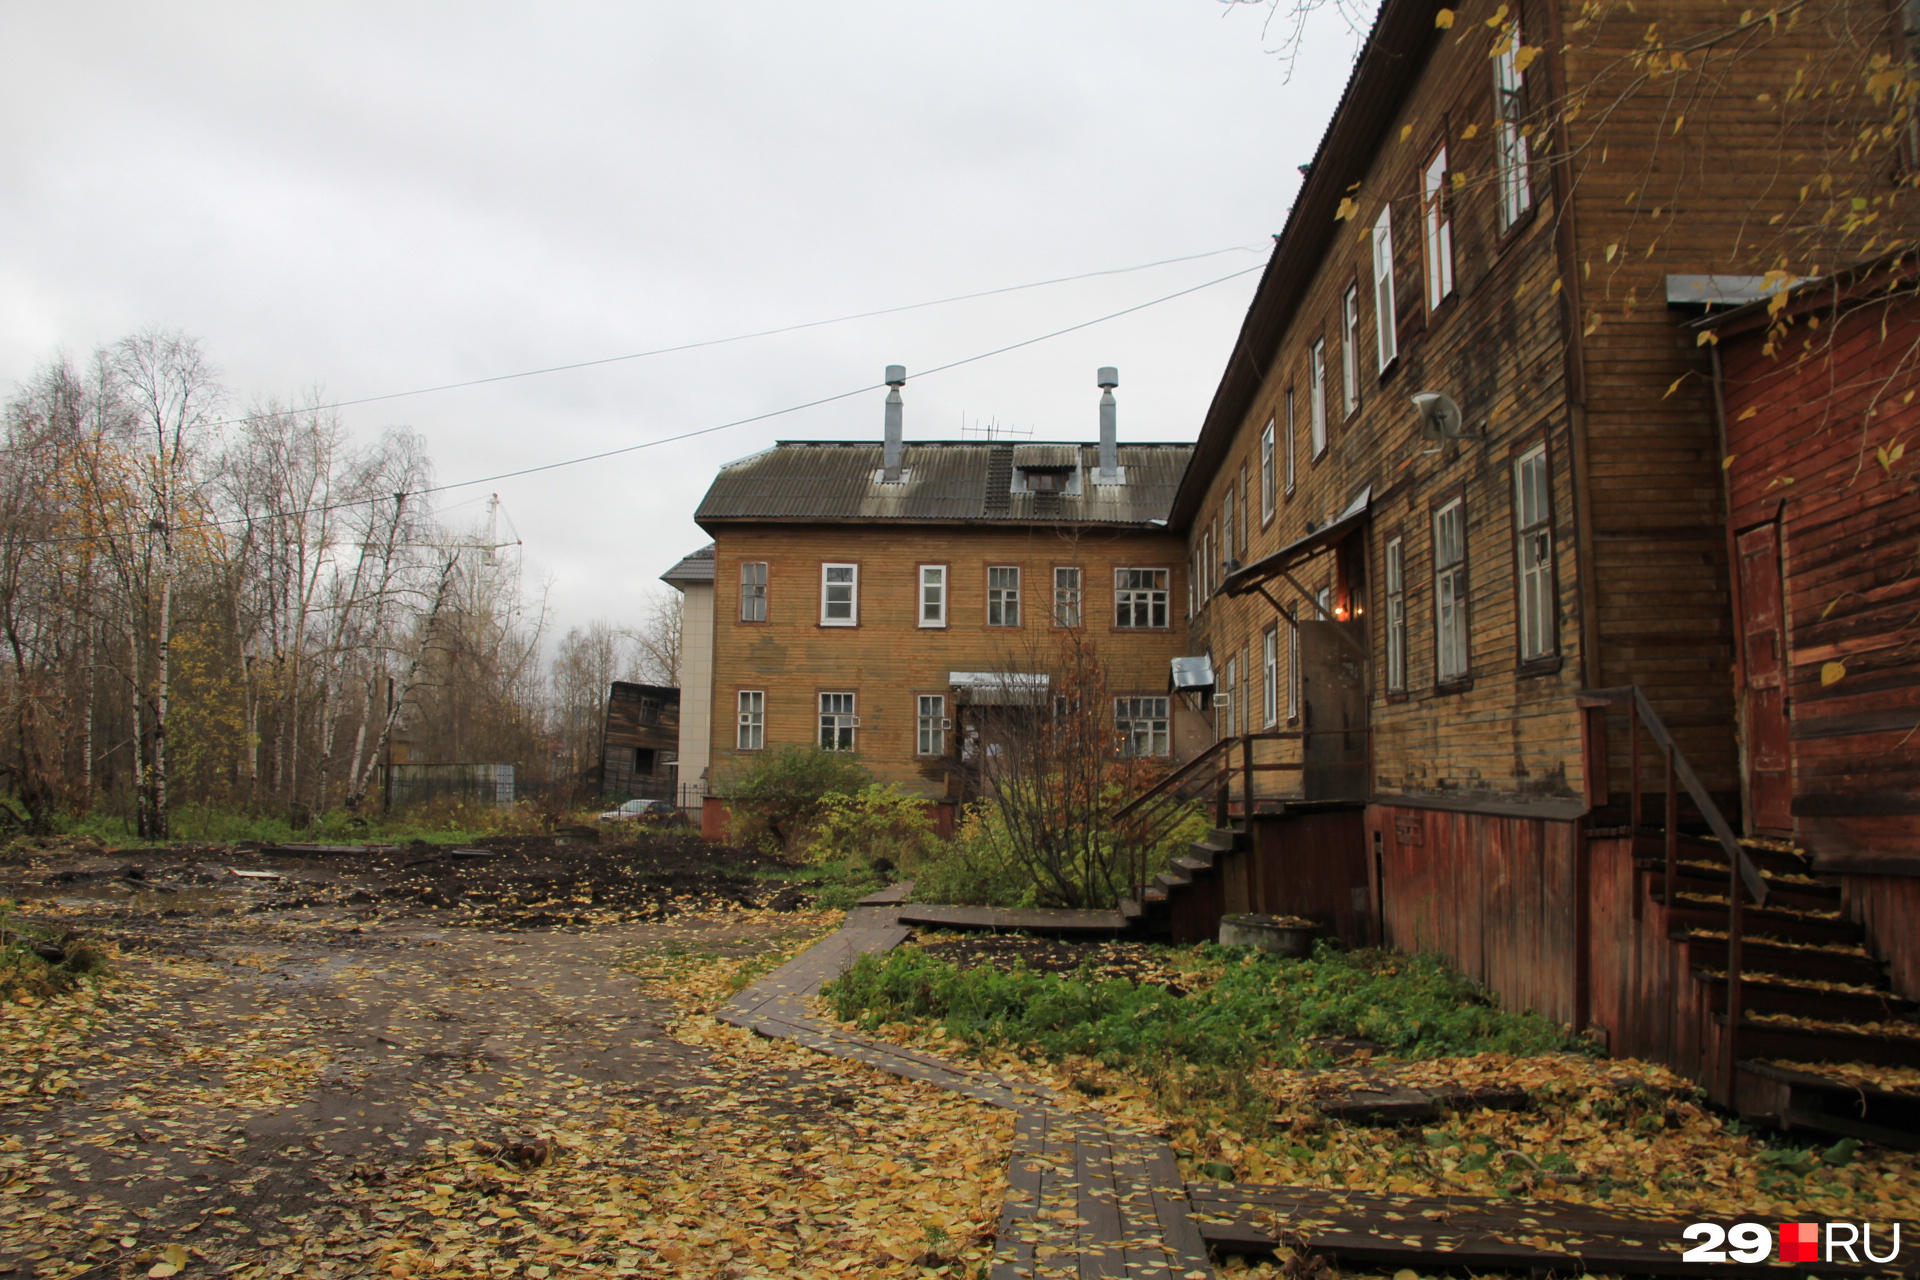 Деревянные тротуары сохранились во многих дворах Архангельска